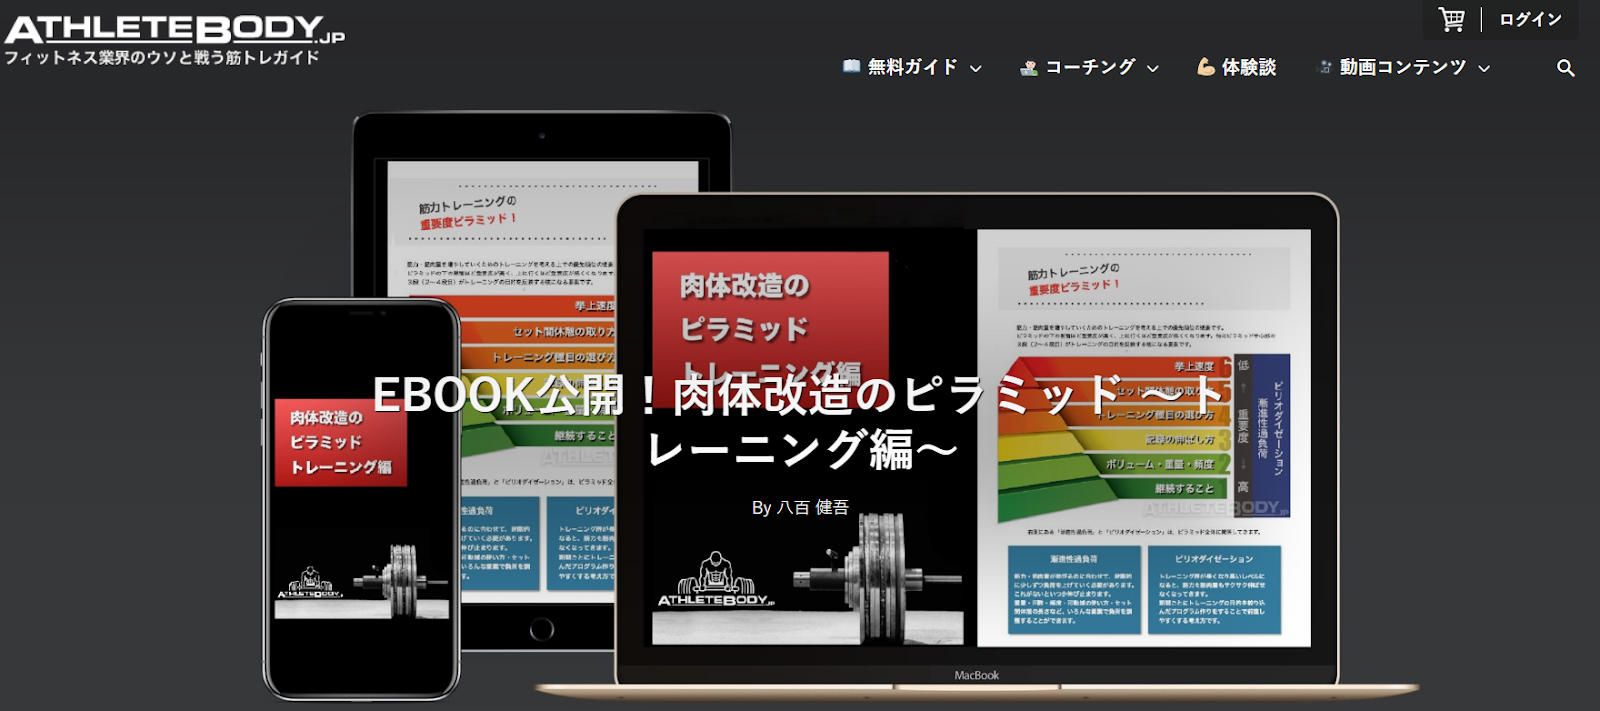 筋トレ情報サイトAthleteBody.jpのホワイトペーパーダウンロードページ